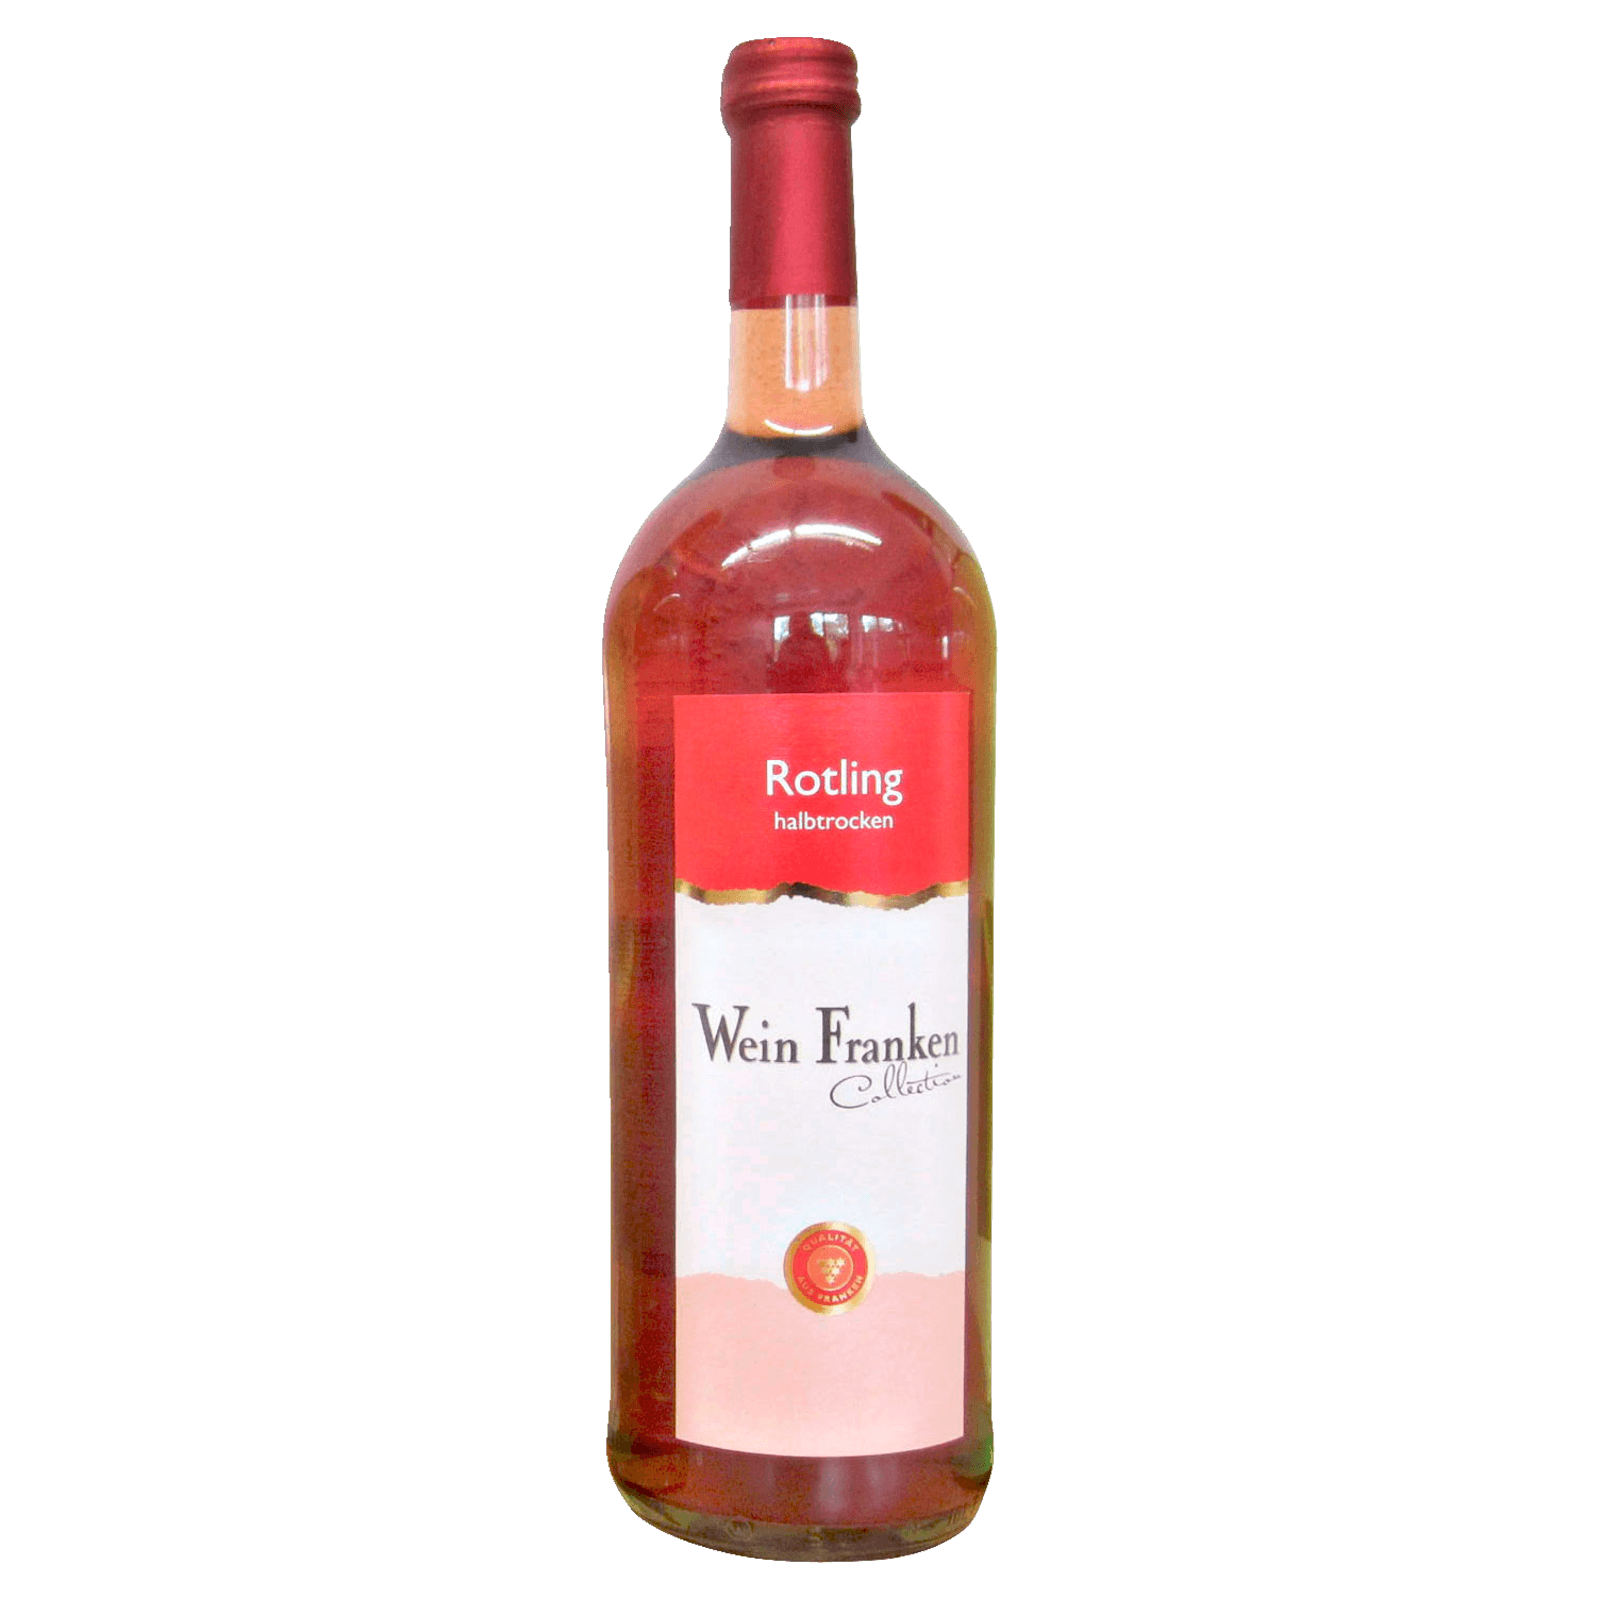 Wein Franken Rosé online bei 1l halbtrocken REWE bestellen! Rotling QbA